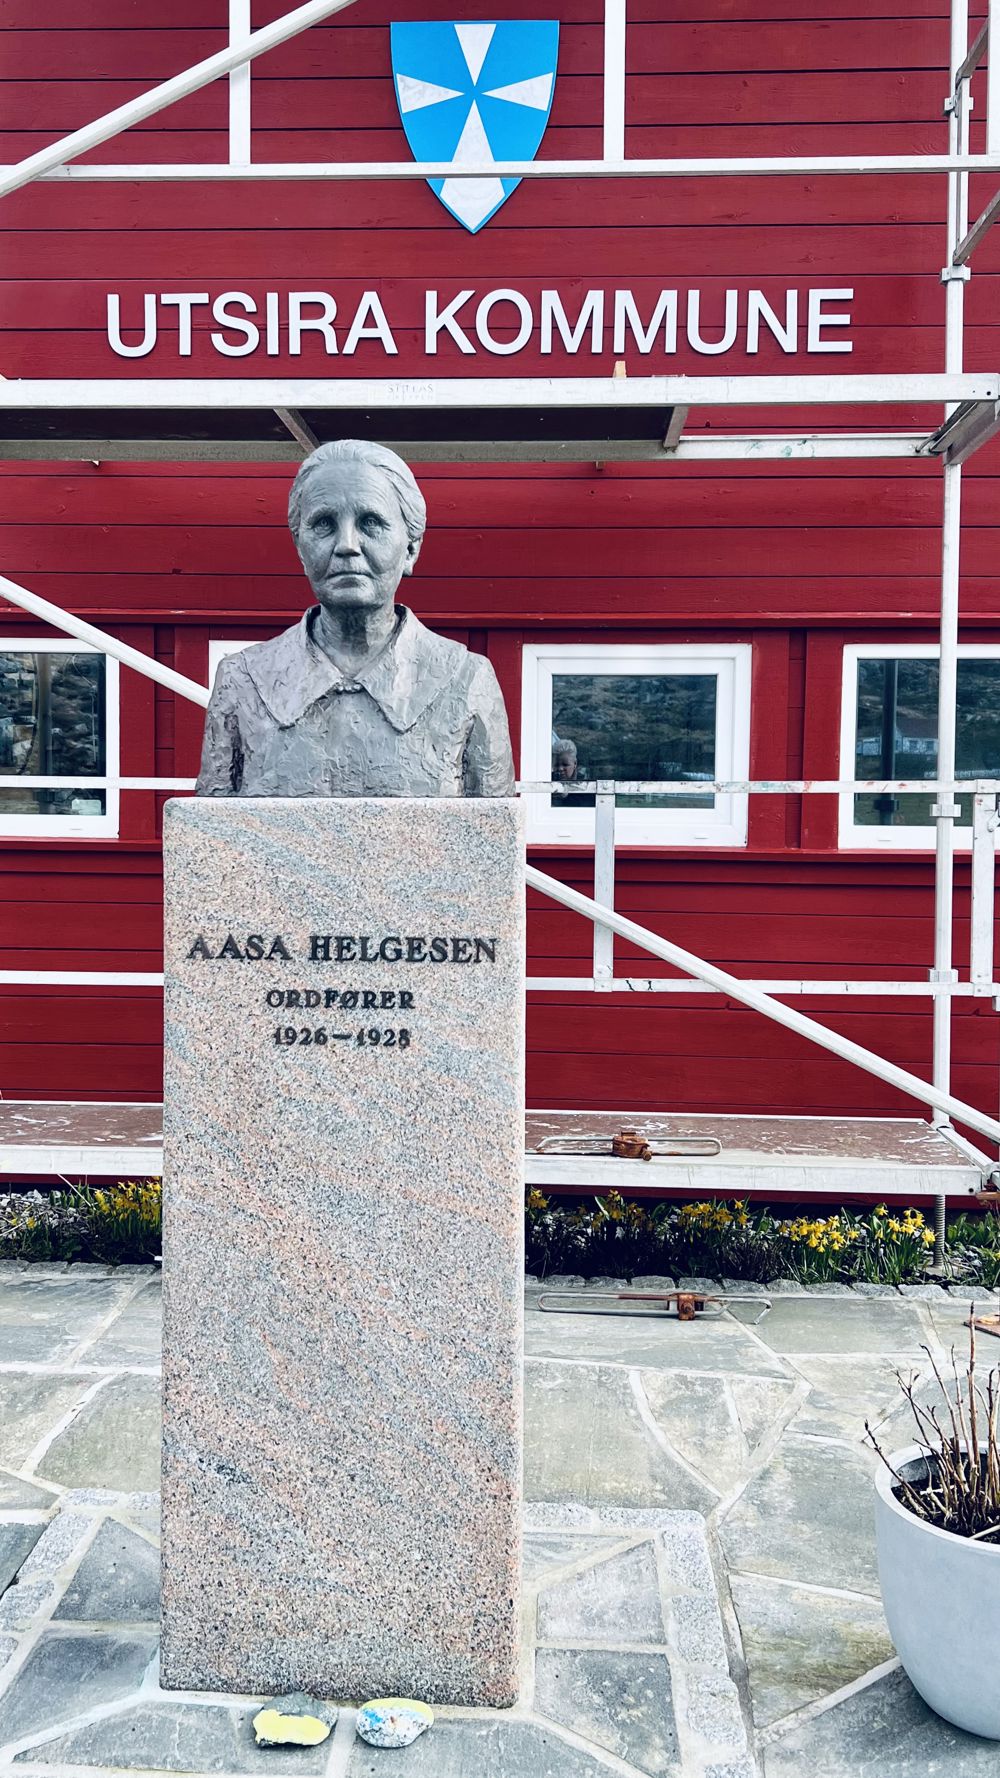 Aasa Helgesen var Europas første kvinnelige ordfører - på Utsira.